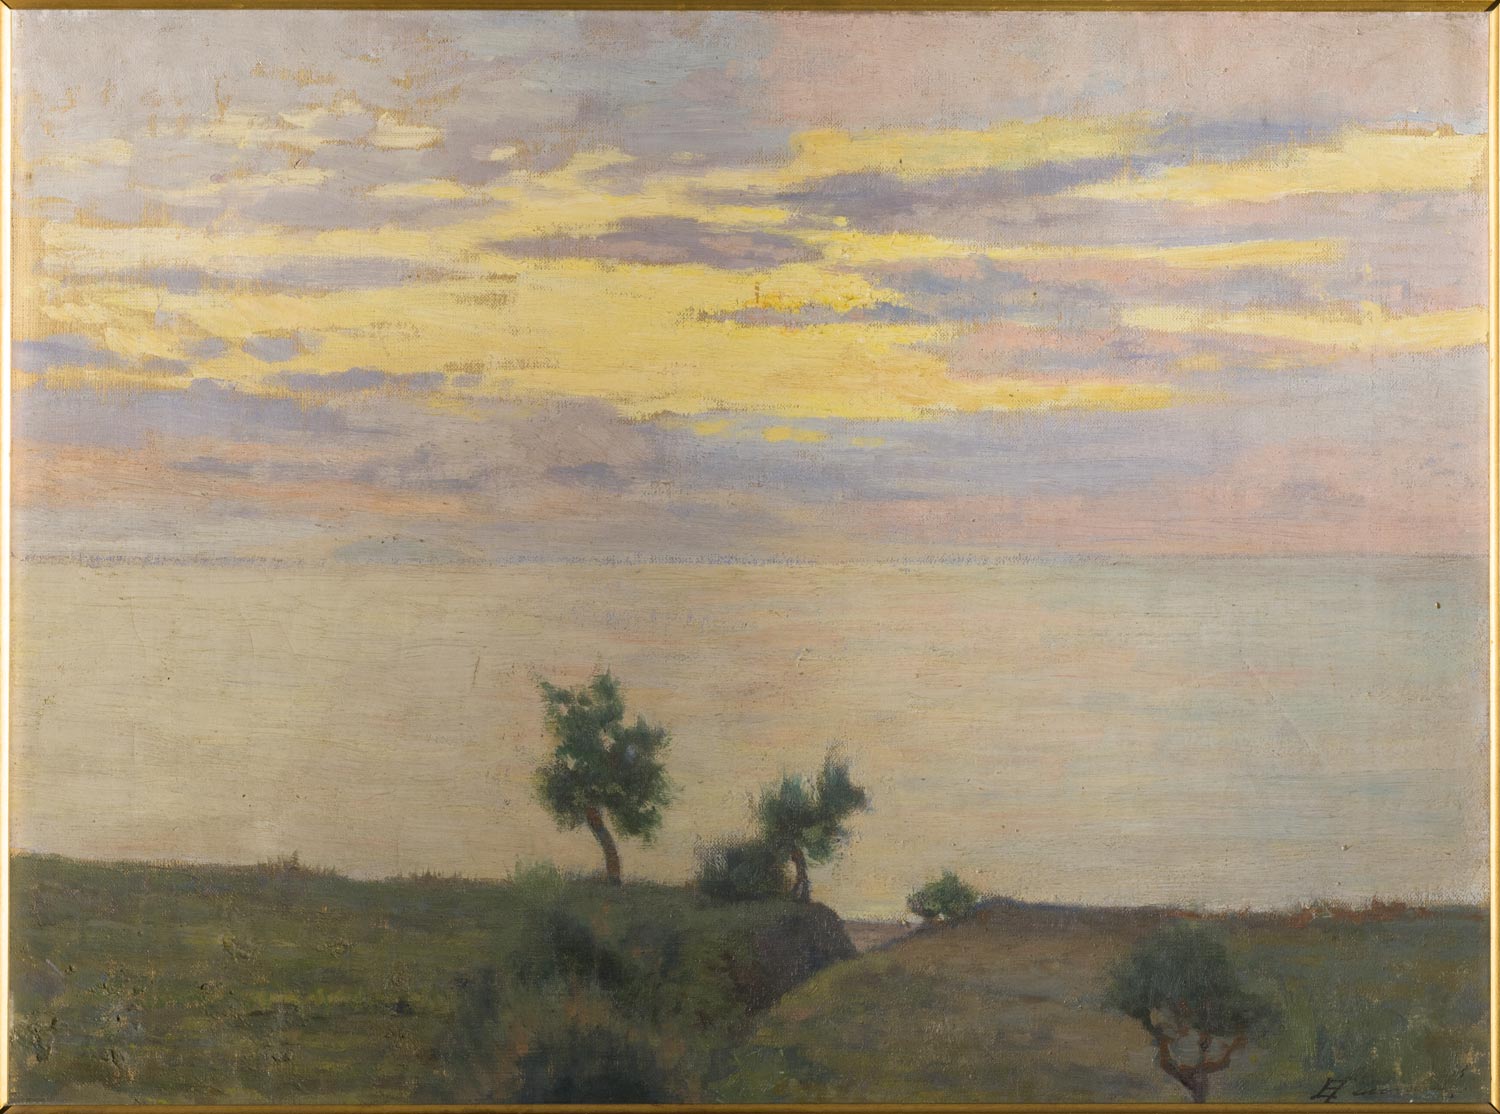 Eugenio Cecconi, Veduta di colline (tramonto sul mare) (1900; olio su tela, 34 x 44,5 cm; Firenze, Galleria d’Arte Moderna di Palazzo Pitti)